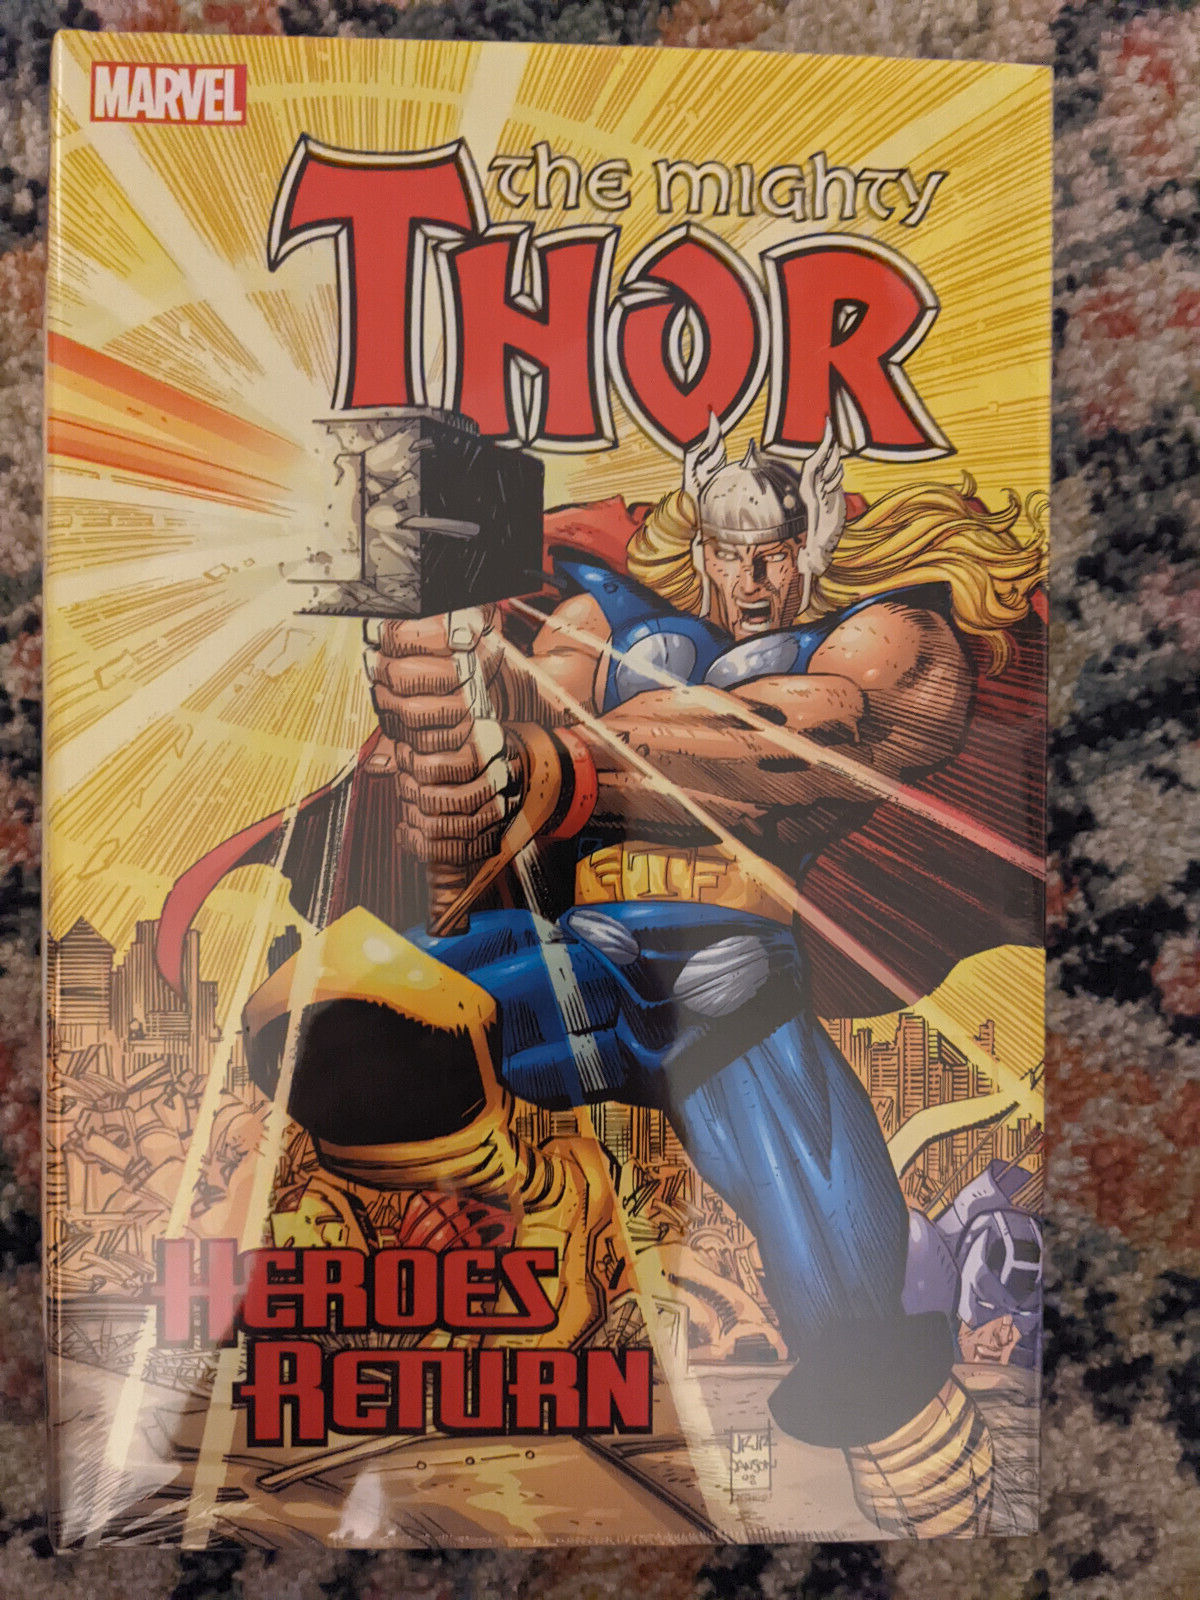 The Mighty Thor Heroes Return Omnibus Vol 1 Jurgens 2017